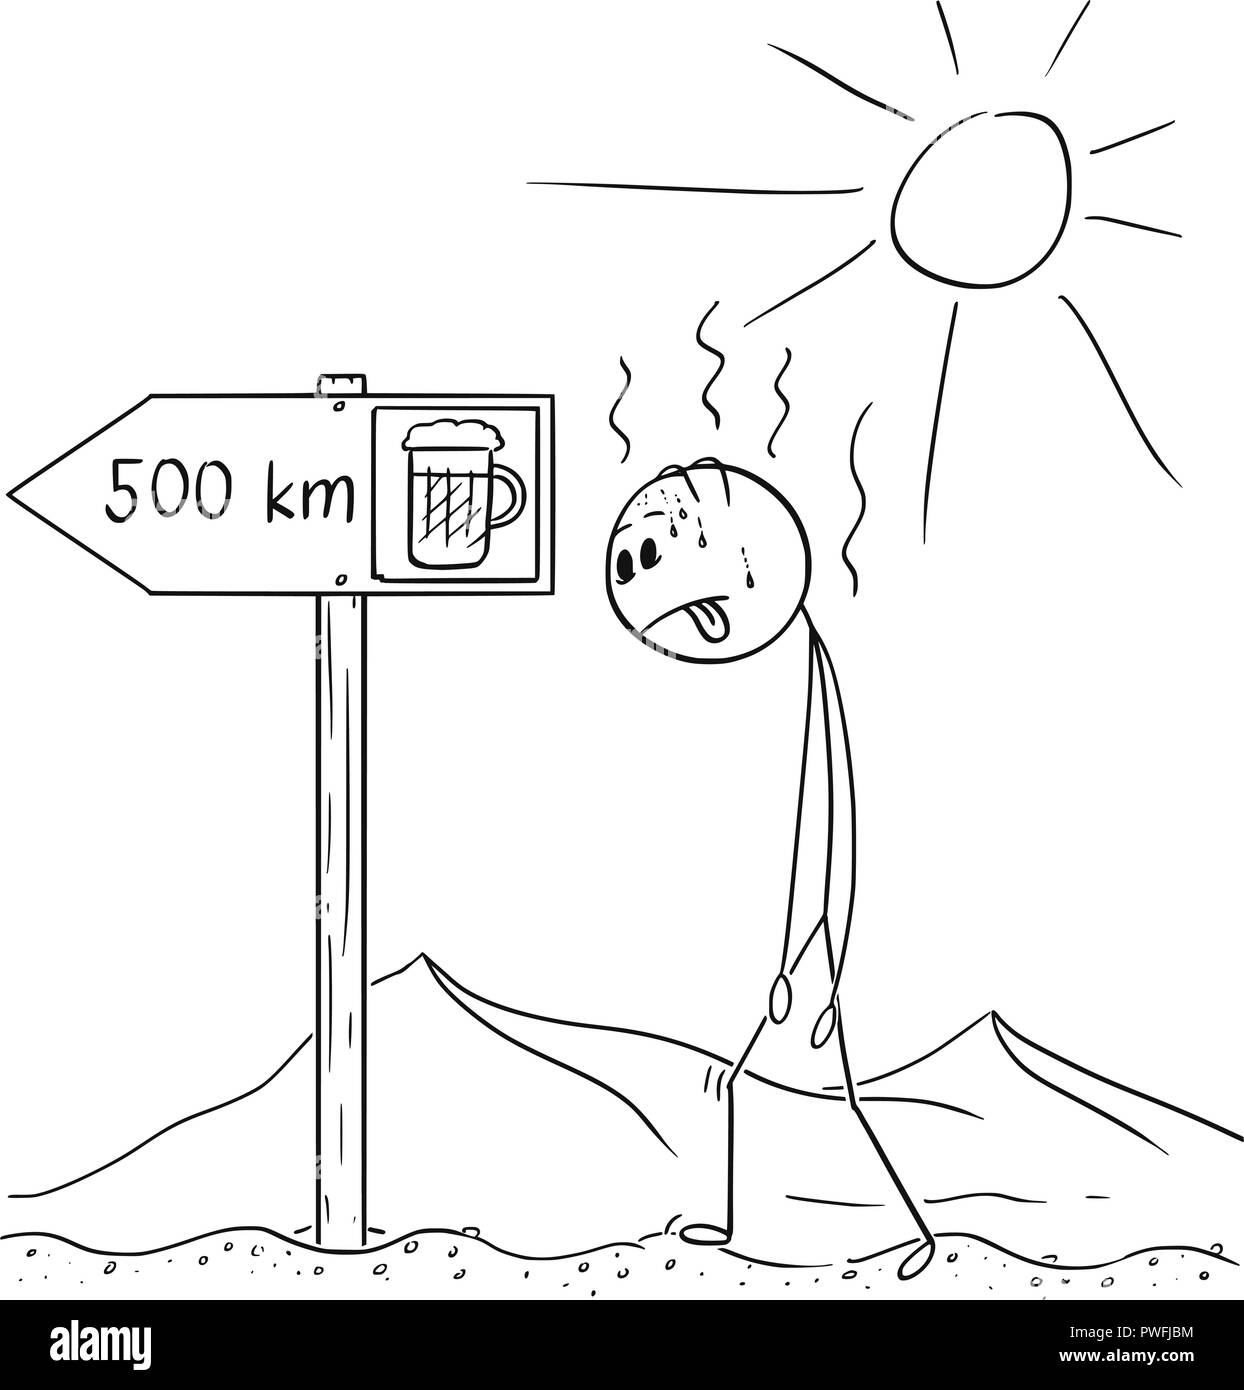 Caricature de l'homme assoiffé de marche à travers le désert et trouvé la bière signe 500 km ou en kilomètres Illustration de Vecteur